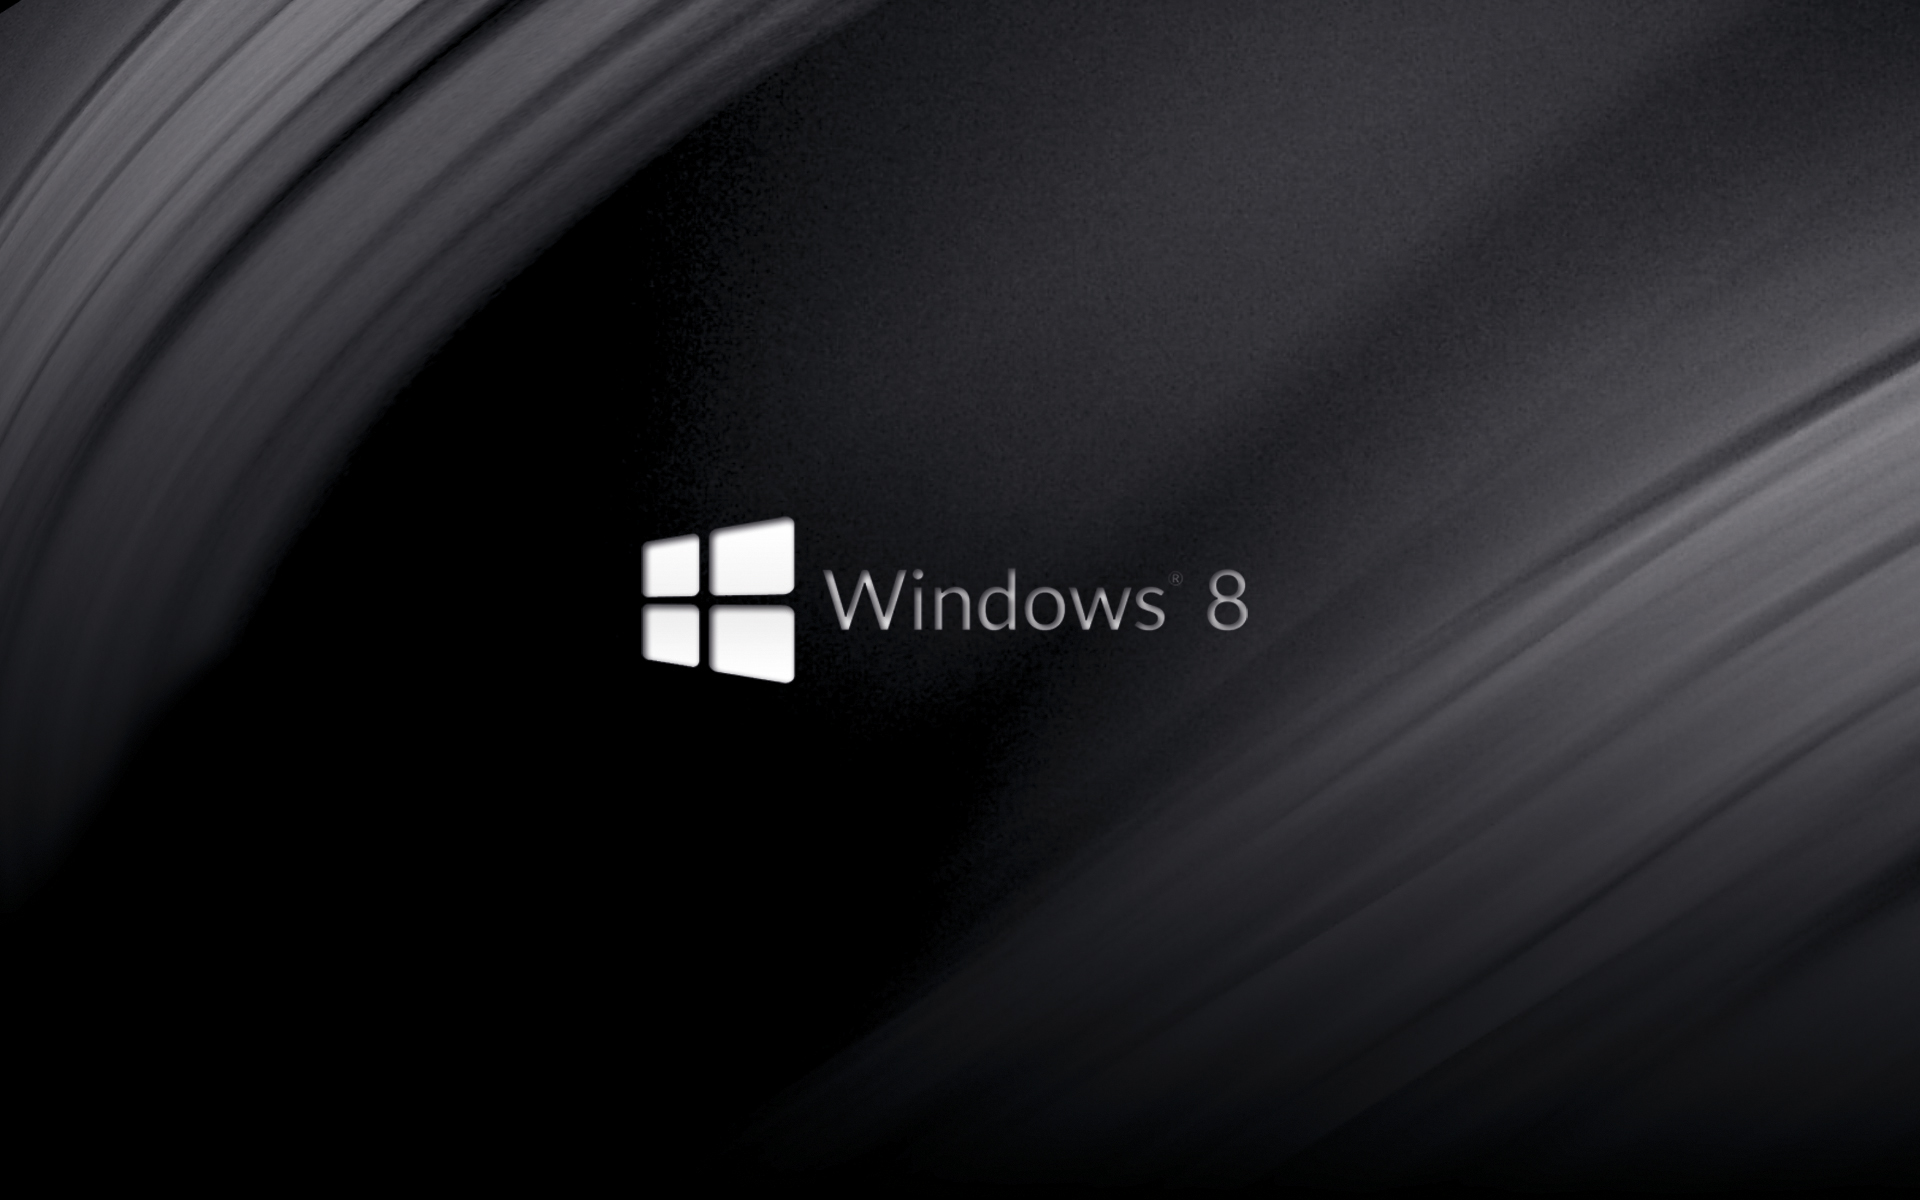 Đẹp và đơn giản, nền đen tối thiểu của Windows 8 Wallpaper trên DeviantArt bởi Wingweaver666 sẽ mang đến cho bạn một trải nghiệm độc đáo trên desktop của mình. Được tạo ra với mục đích tối ưu hóa hiệu suất và tối giản giao diện, hình nền này sẽ giúp bạn tập trung vào công việc của mình một cách hiệu quả.